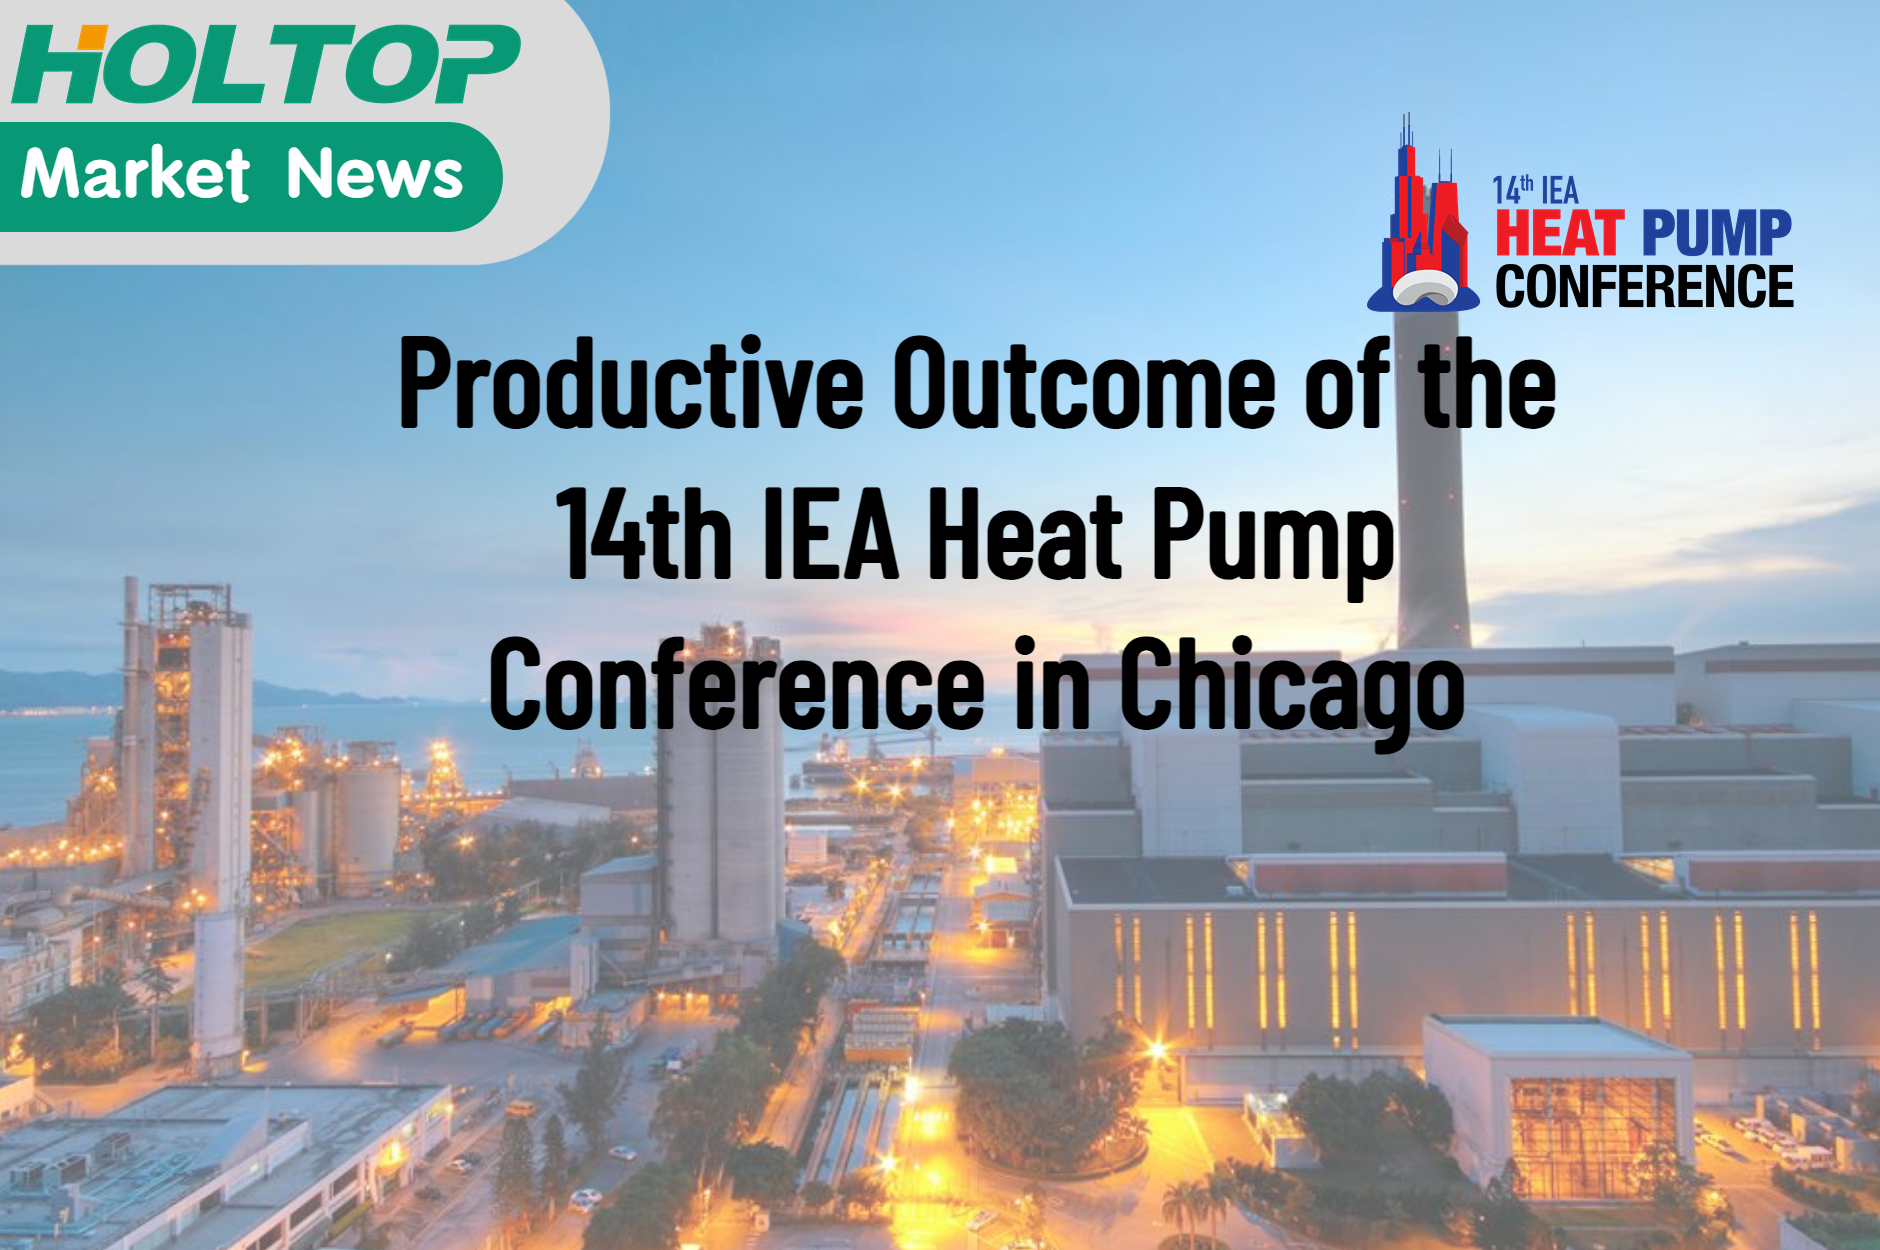 النتيجة الإنتاجية لمؤتمر المضخات الحرارية الرابع عشر لوكالة الطاقة الدولية في شيكاغو